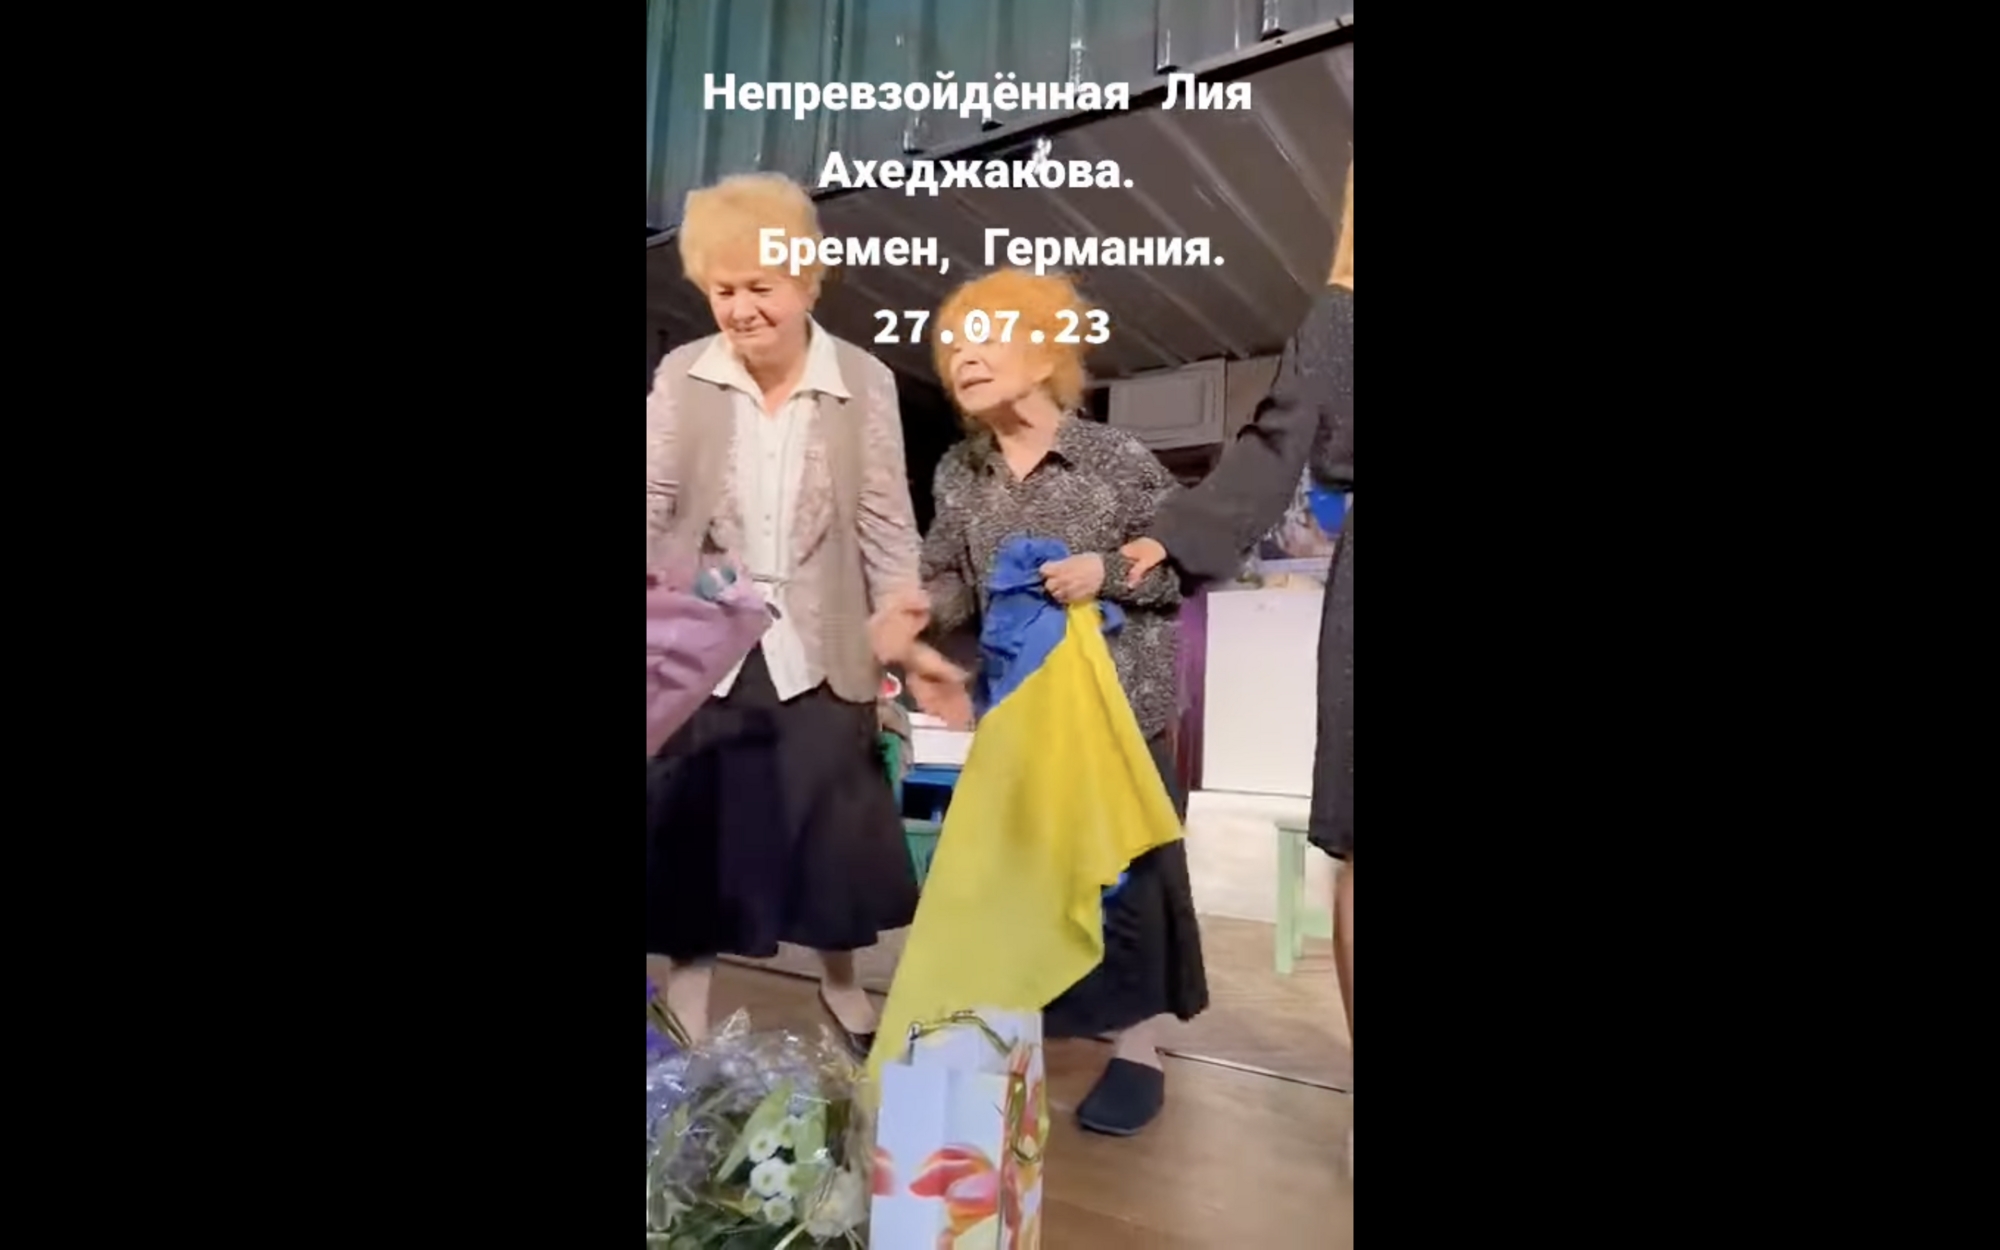 "Ми ж не людожери!" У Держдумі РФ пояснили, чому не карали Лію Ахеджакову за підтримку України
